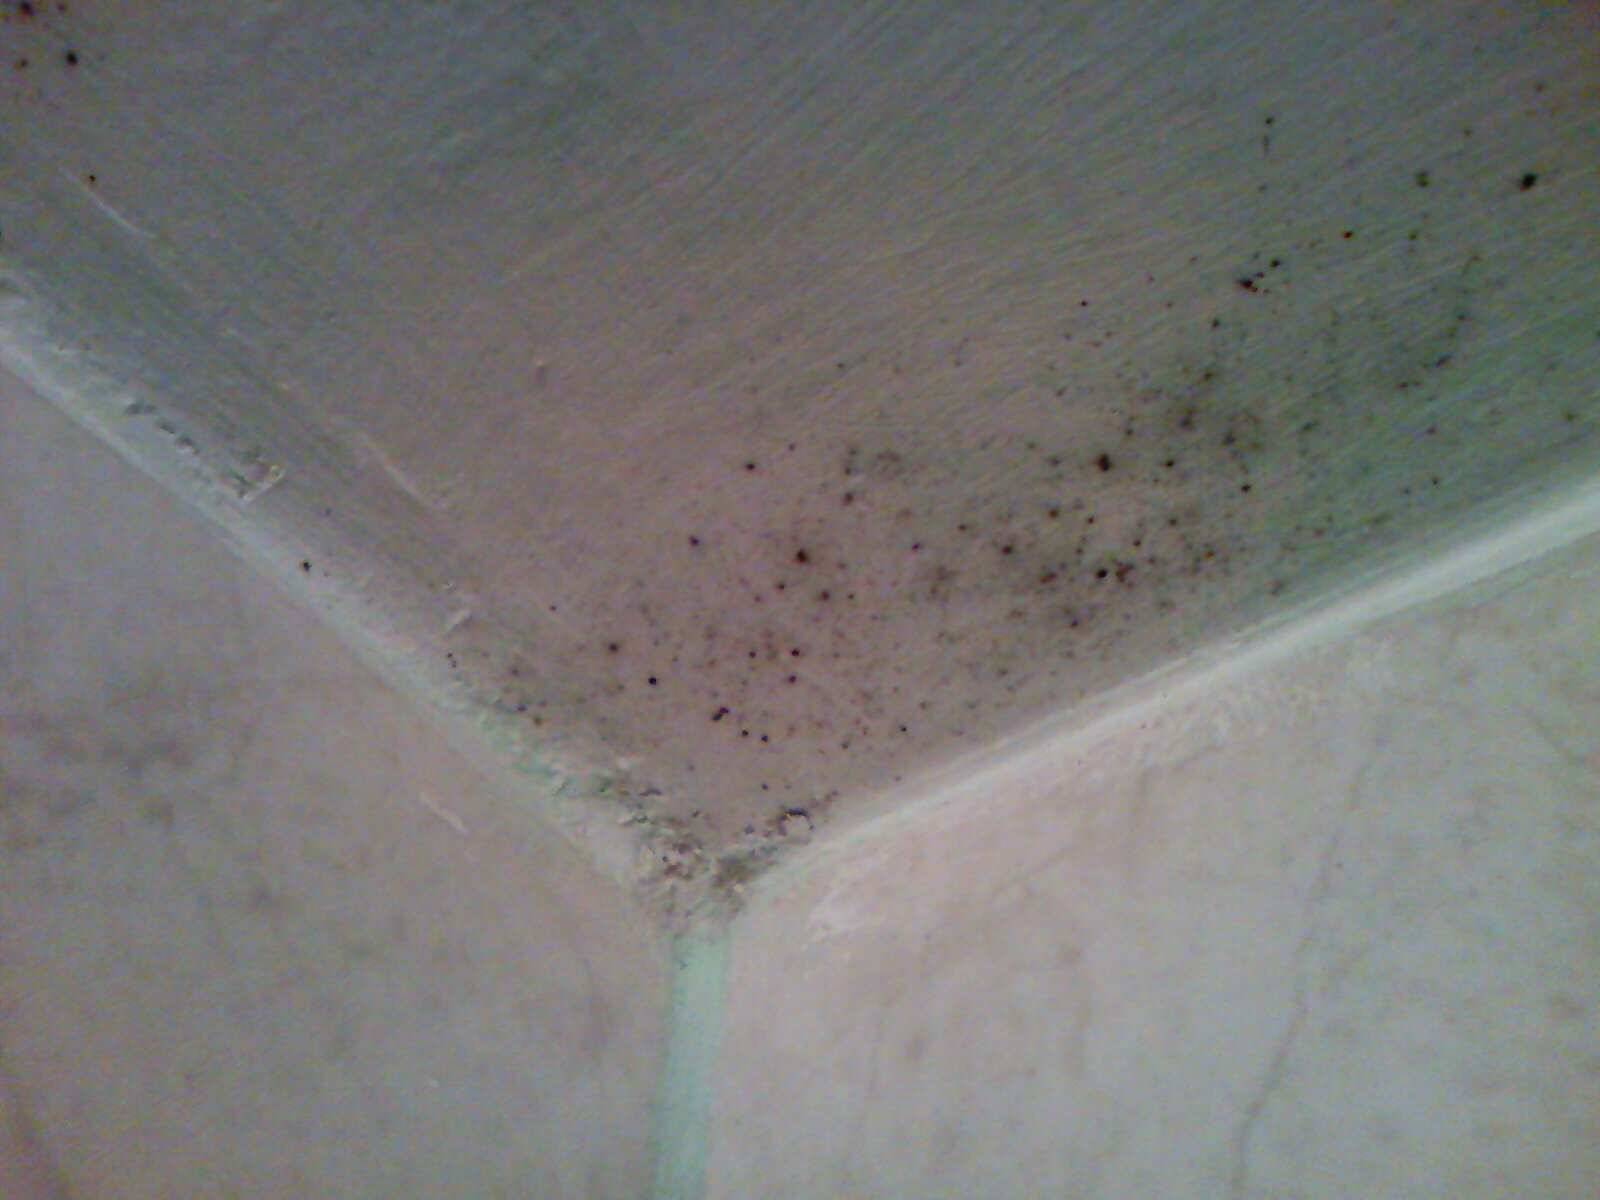 Как убрать плесень на герметике в ванной комнате: народные и химические средства для удаления черного грибка в душе